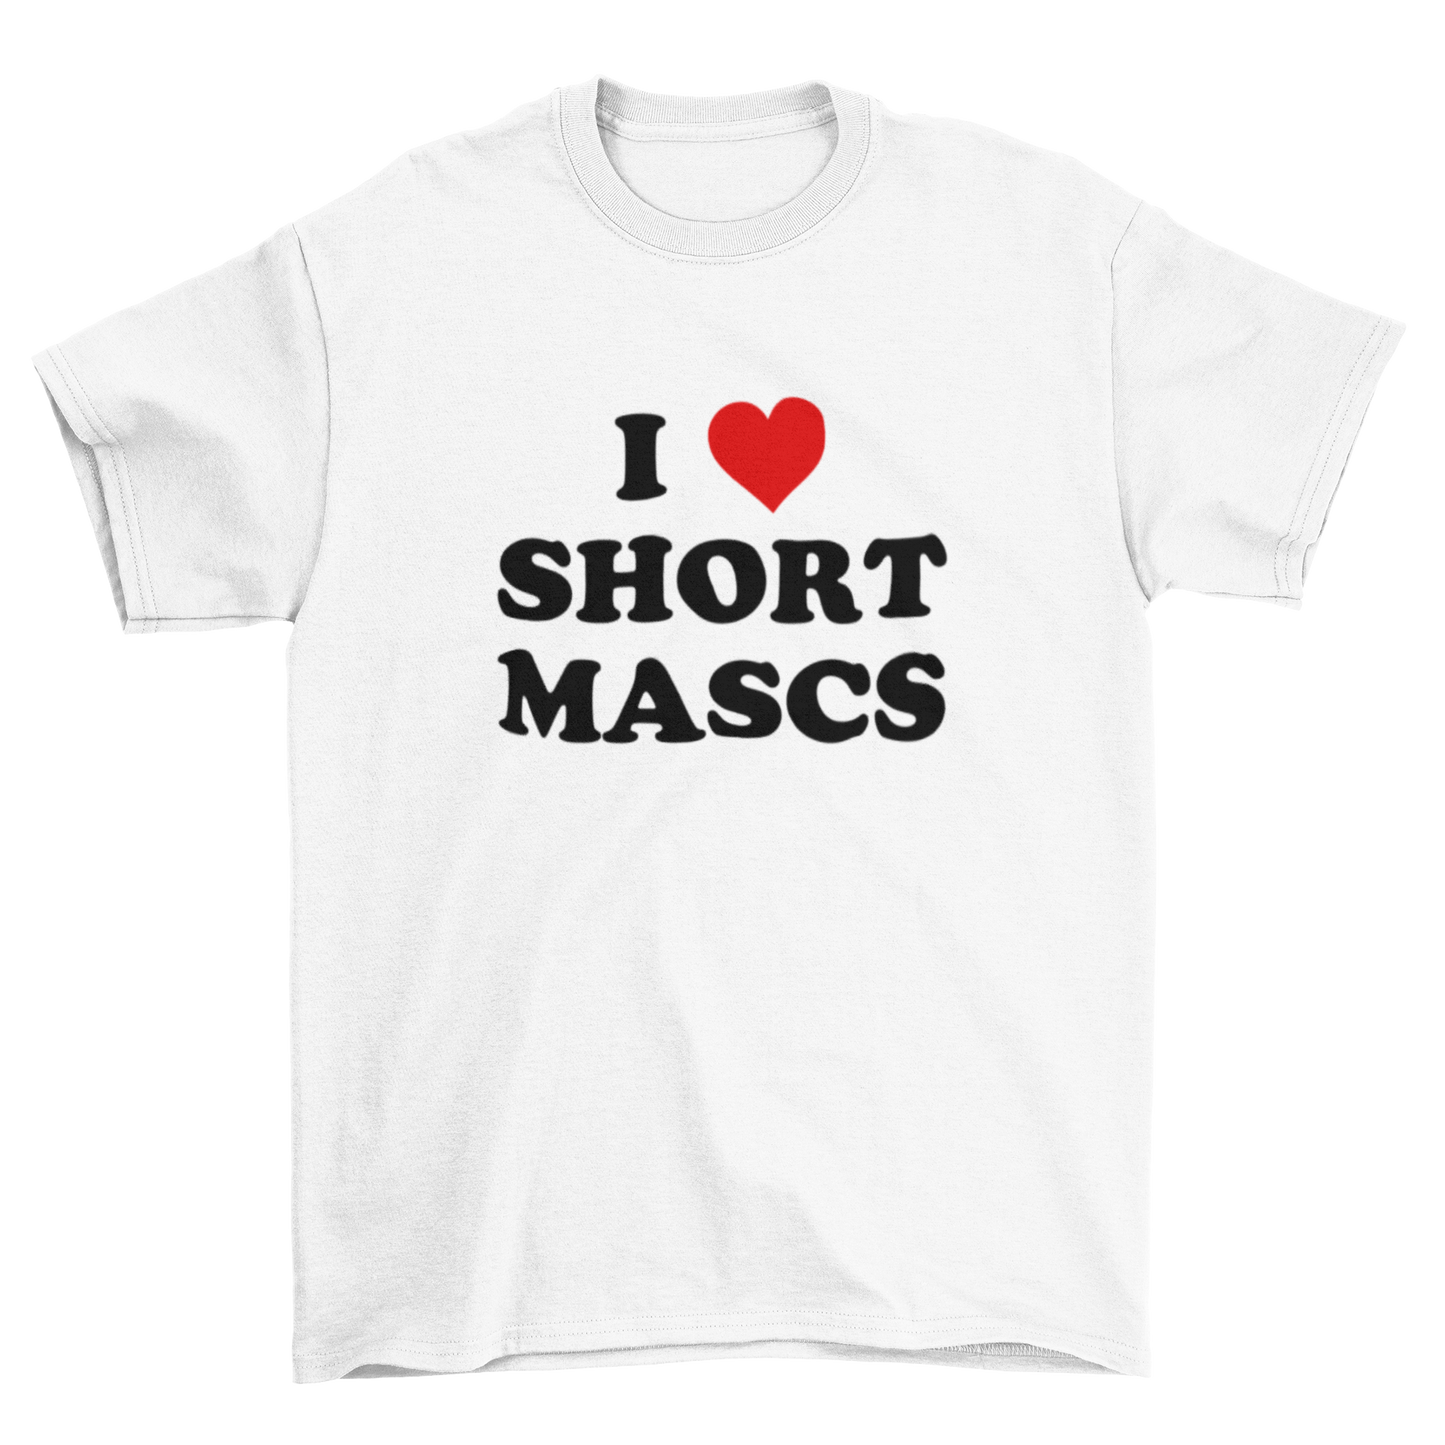 i <3 short mascs – unisex t-shirt